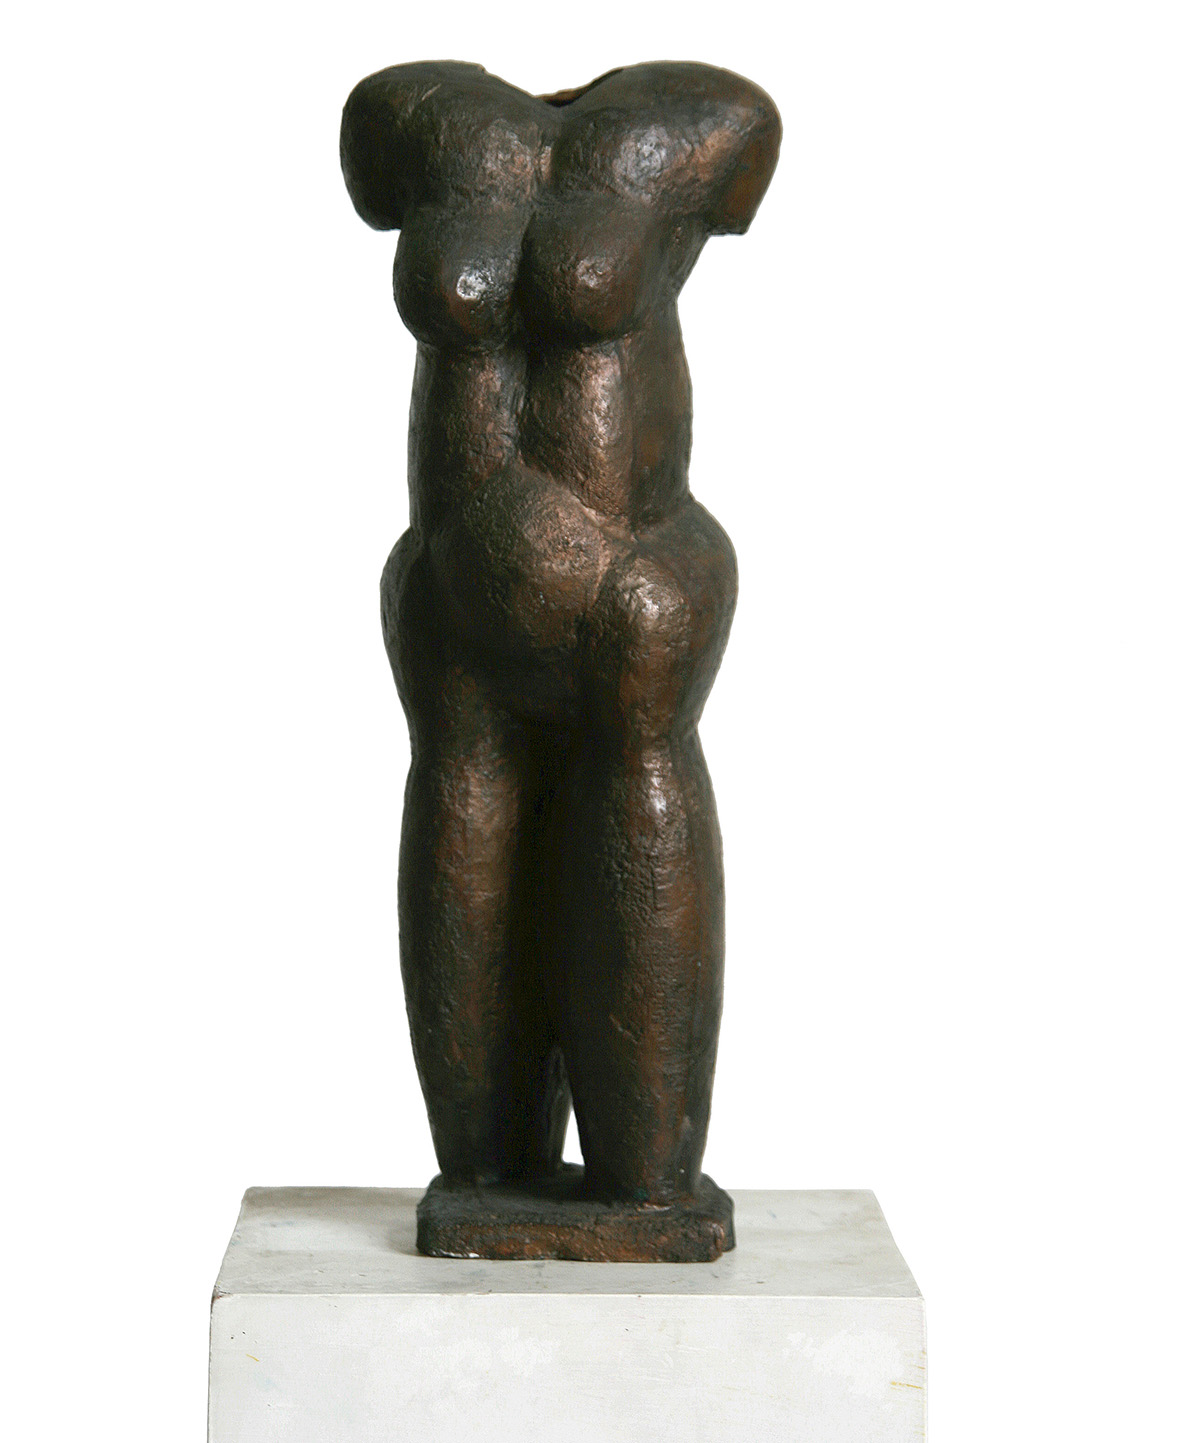 Weibliche Figur, 195843 x 15 x 13 cmBronze; Edition: 10